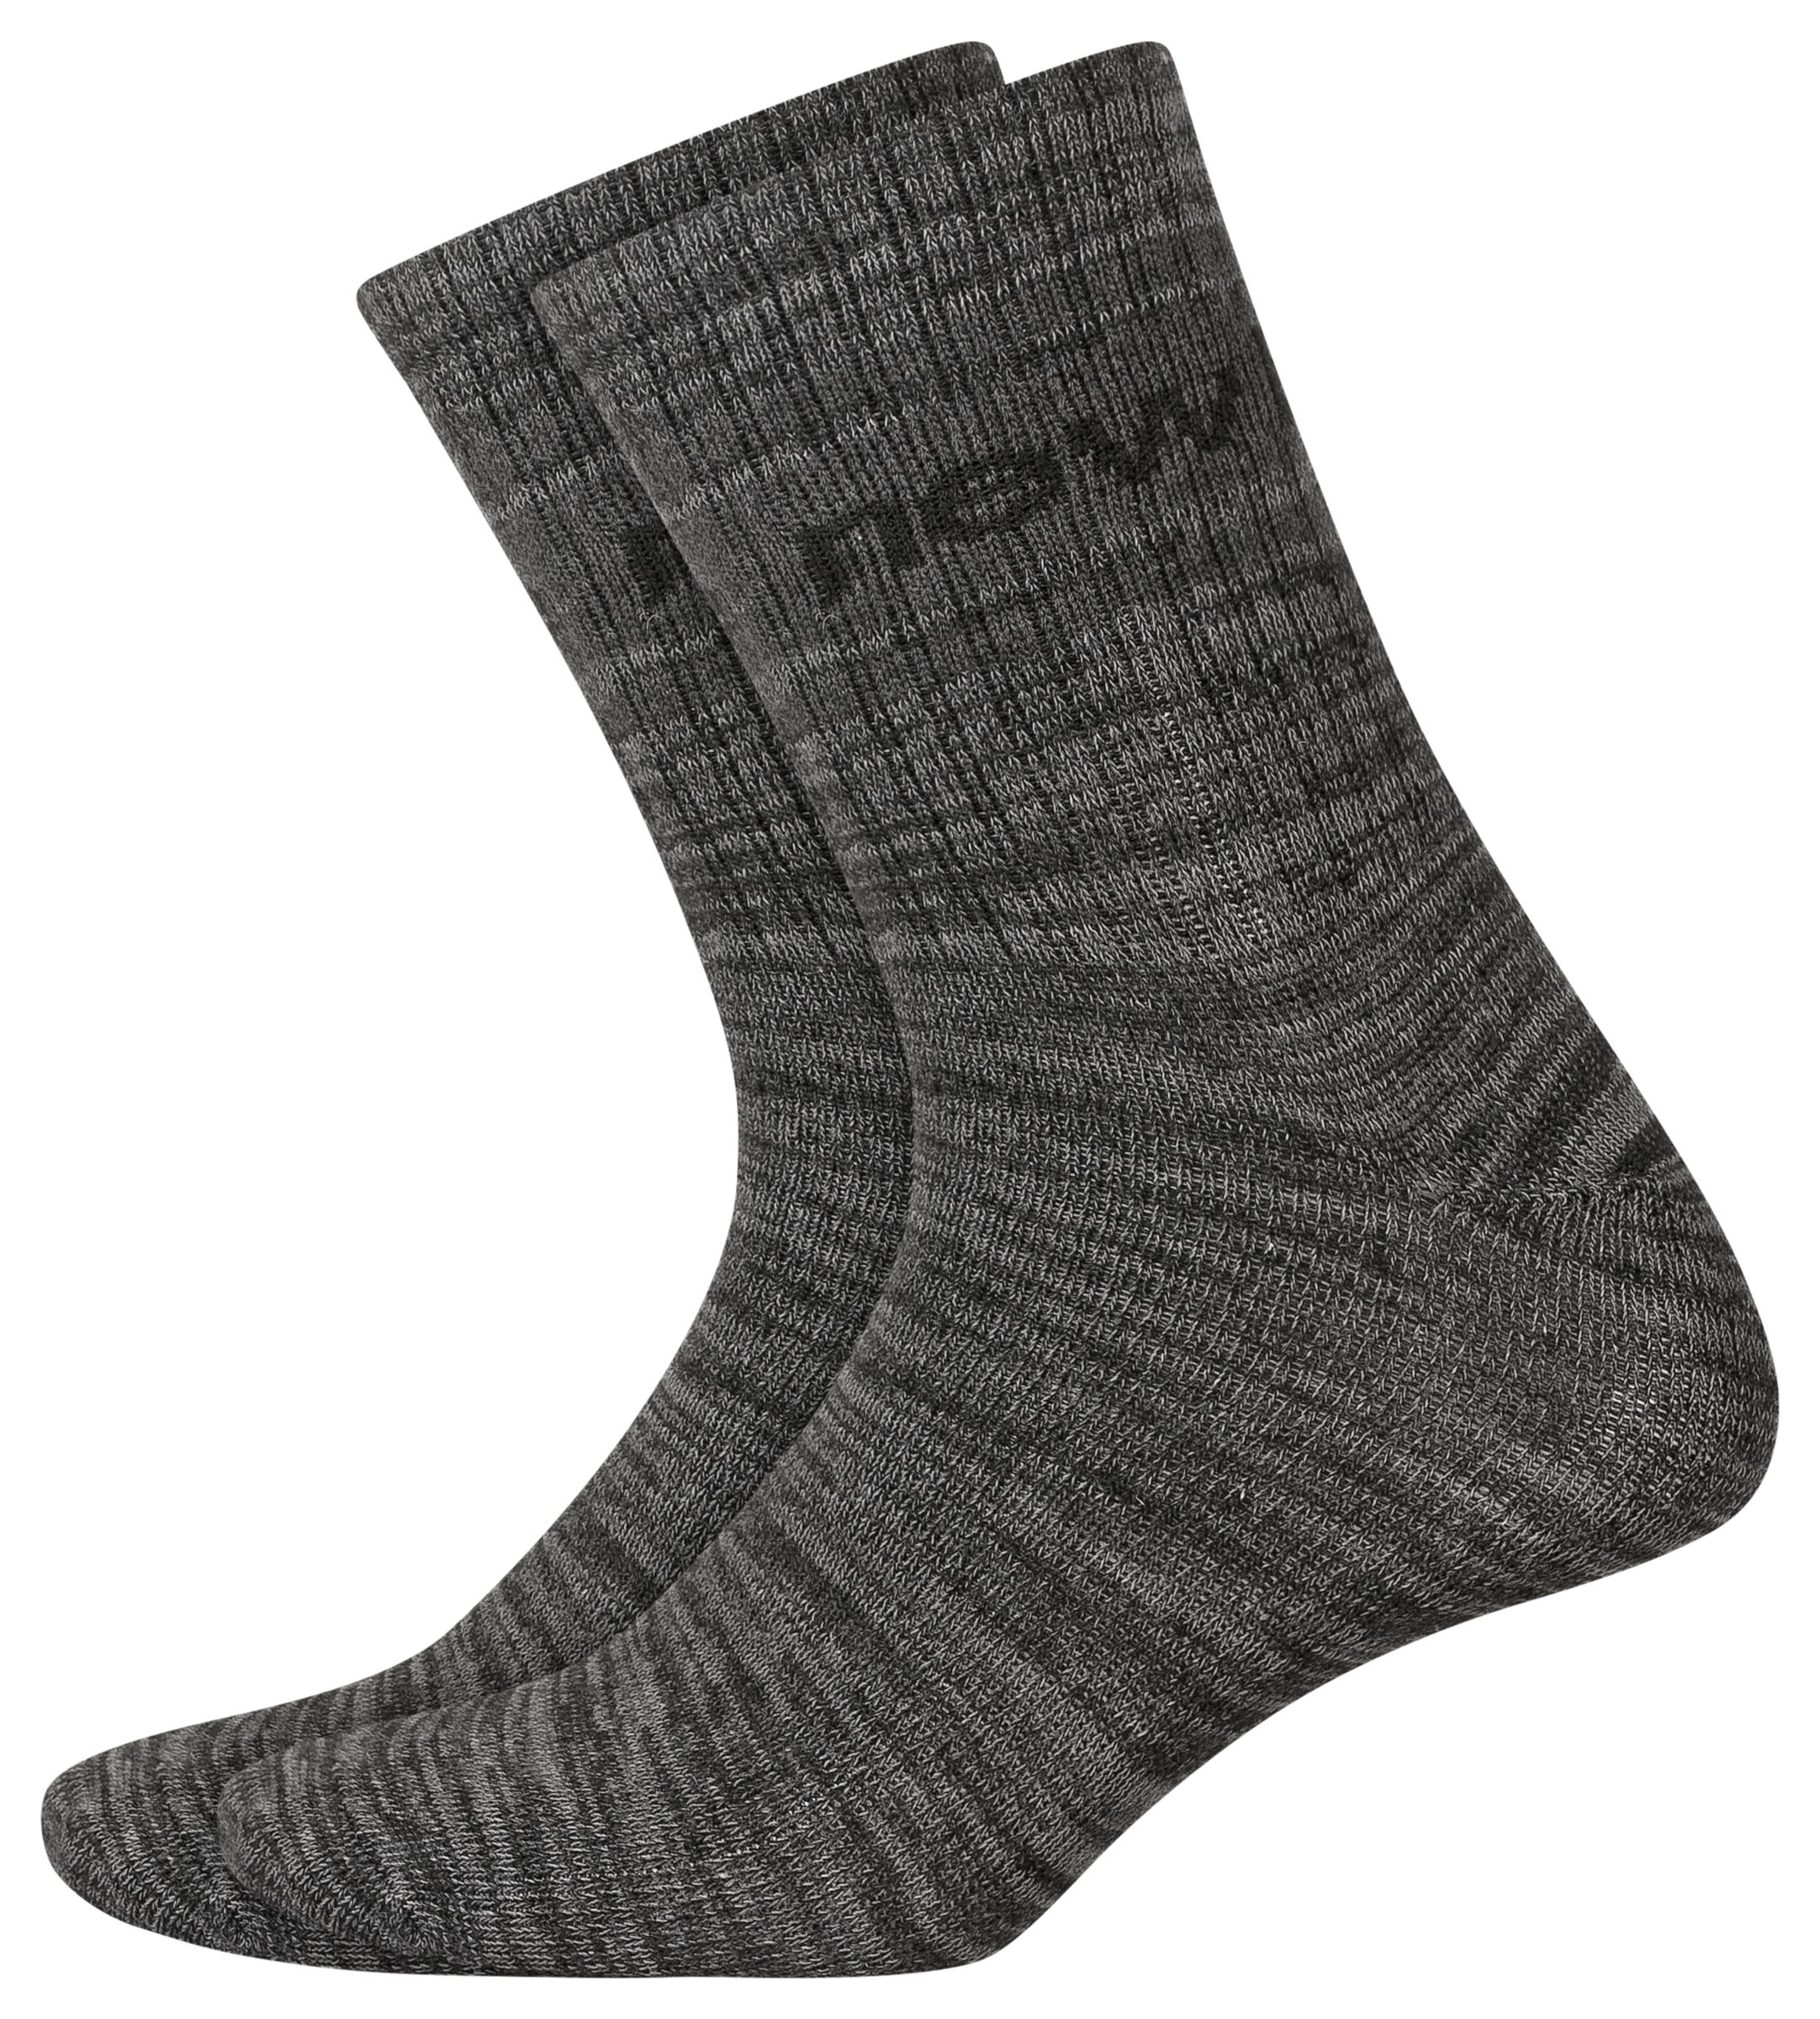 Men's Crew, Quarter, No Show & Low-Cut Socks - New Balance